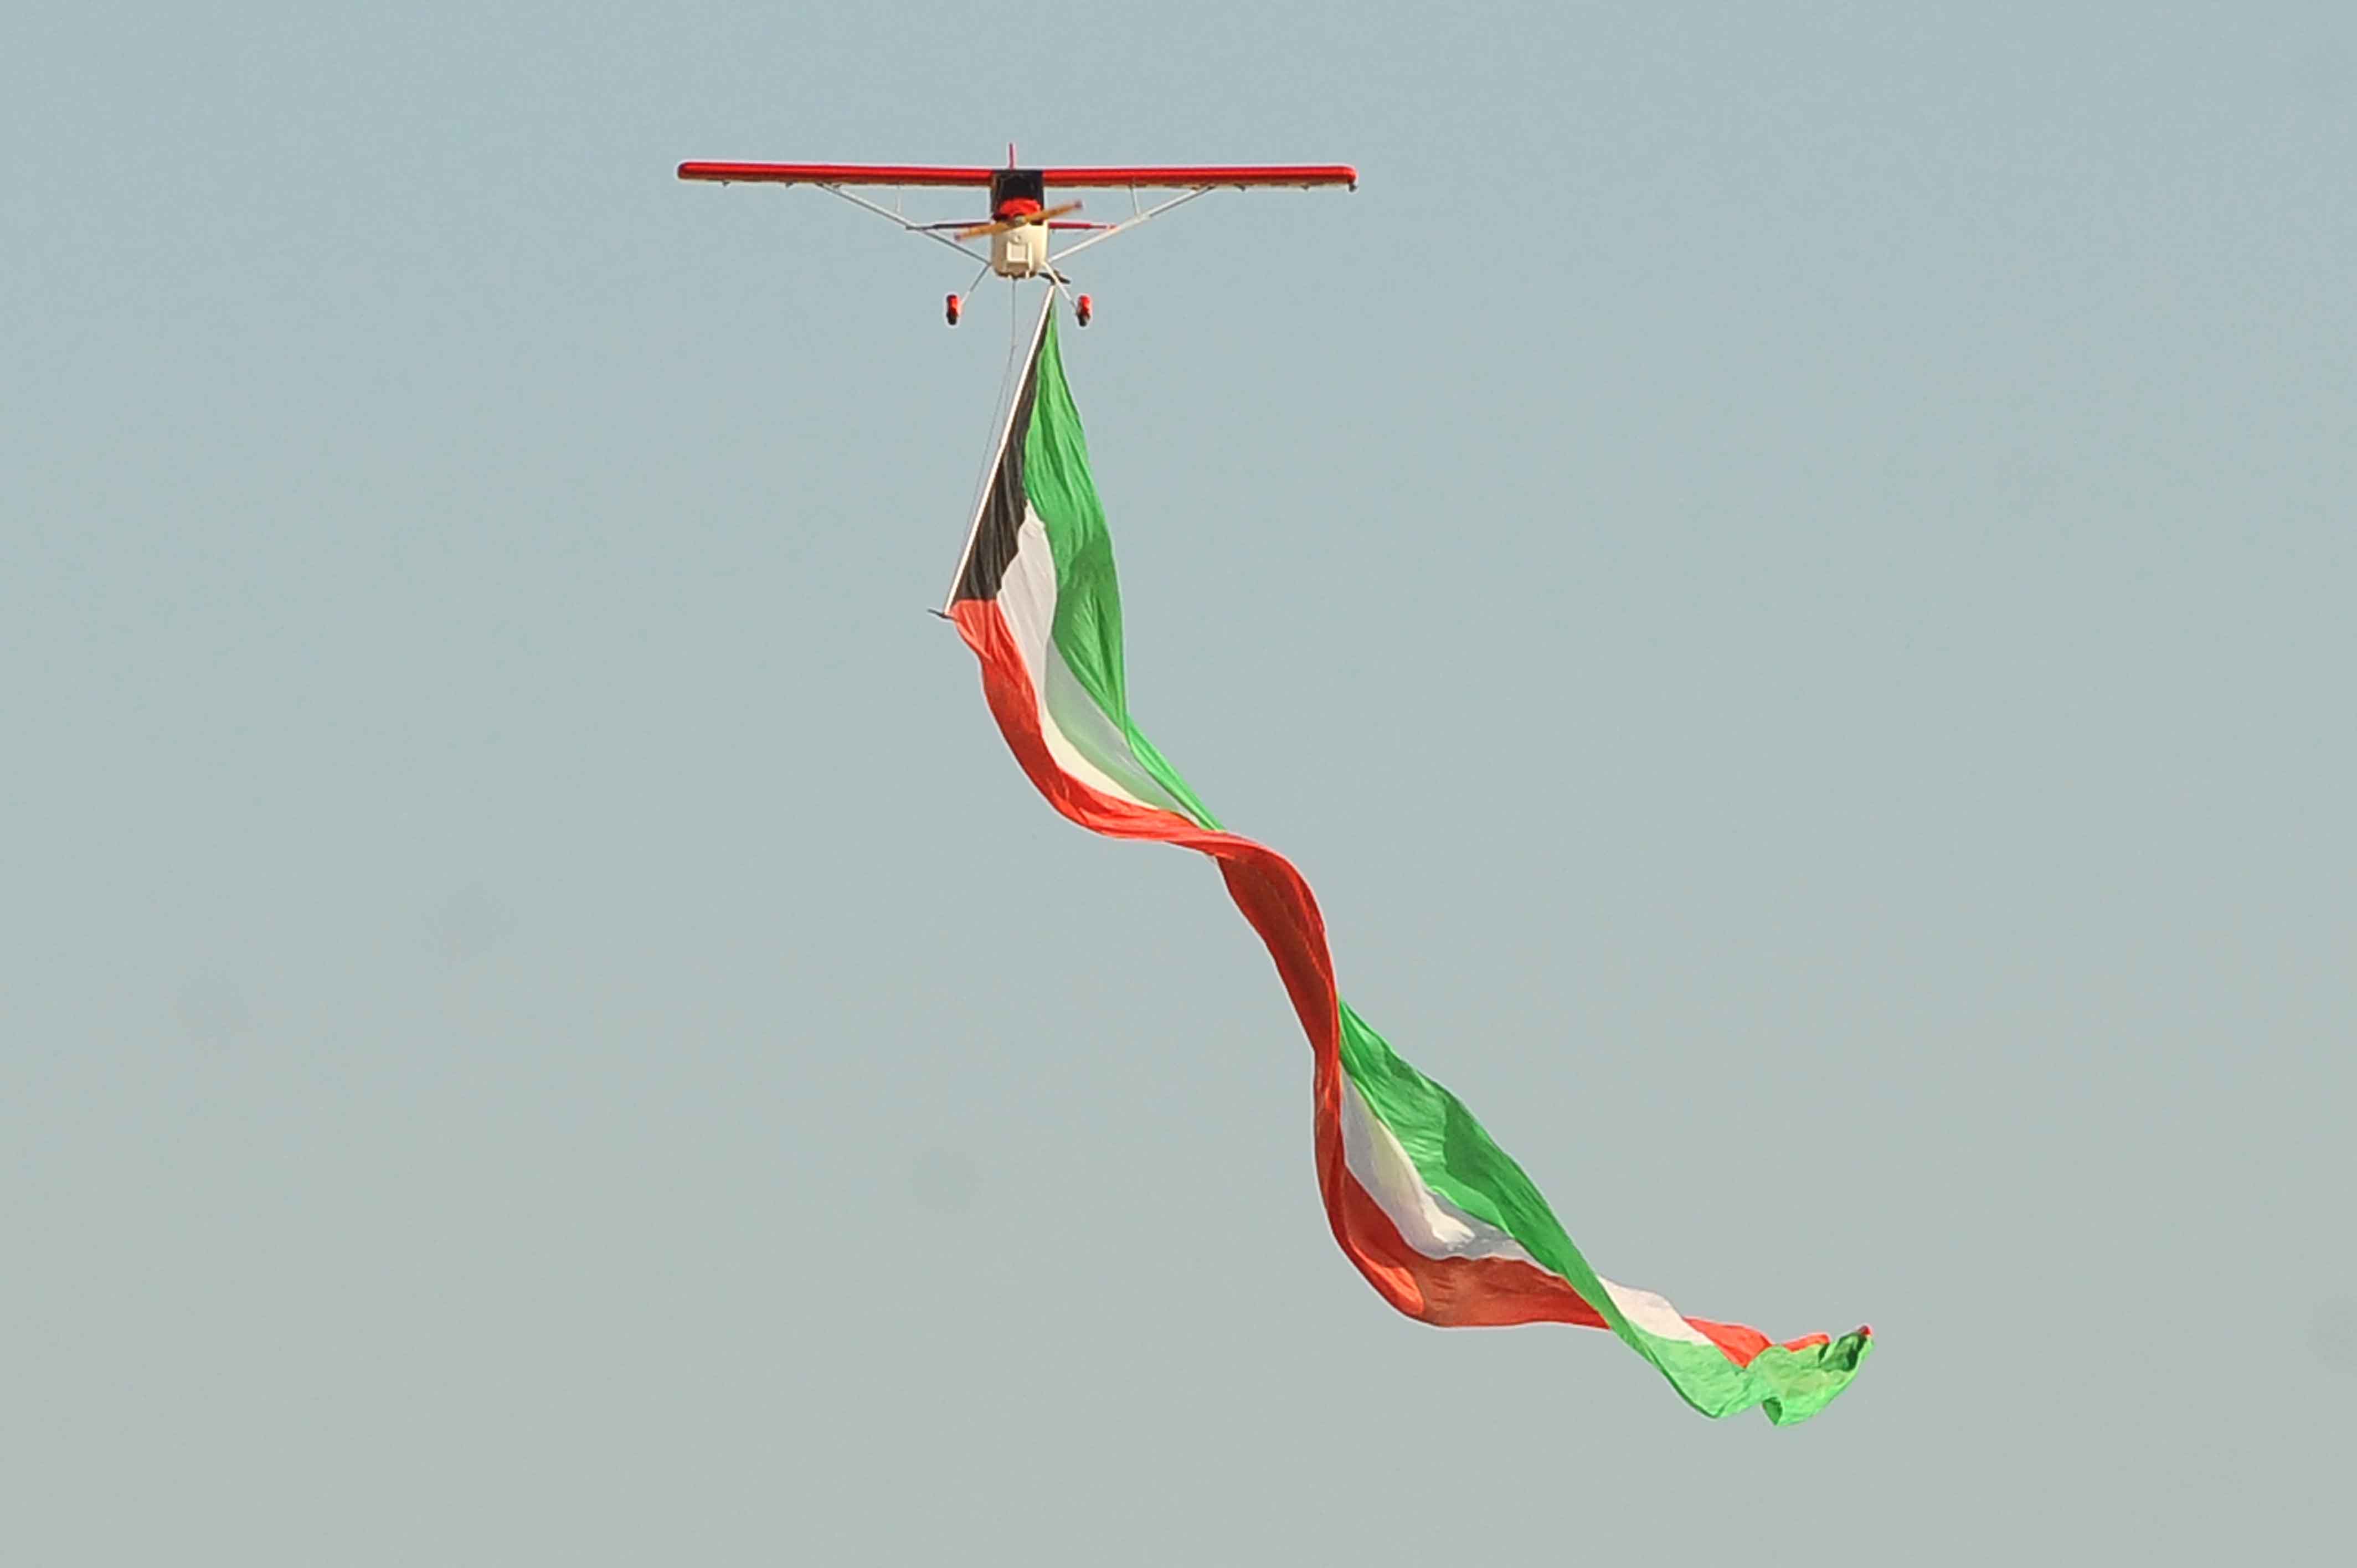 علم دولة الكويت الذي تم تسجيله في موسوعة غينيس كأطول علم في العالم وذلك في استعراض جوي لطائرة تعمل بالتحكم عن بعد